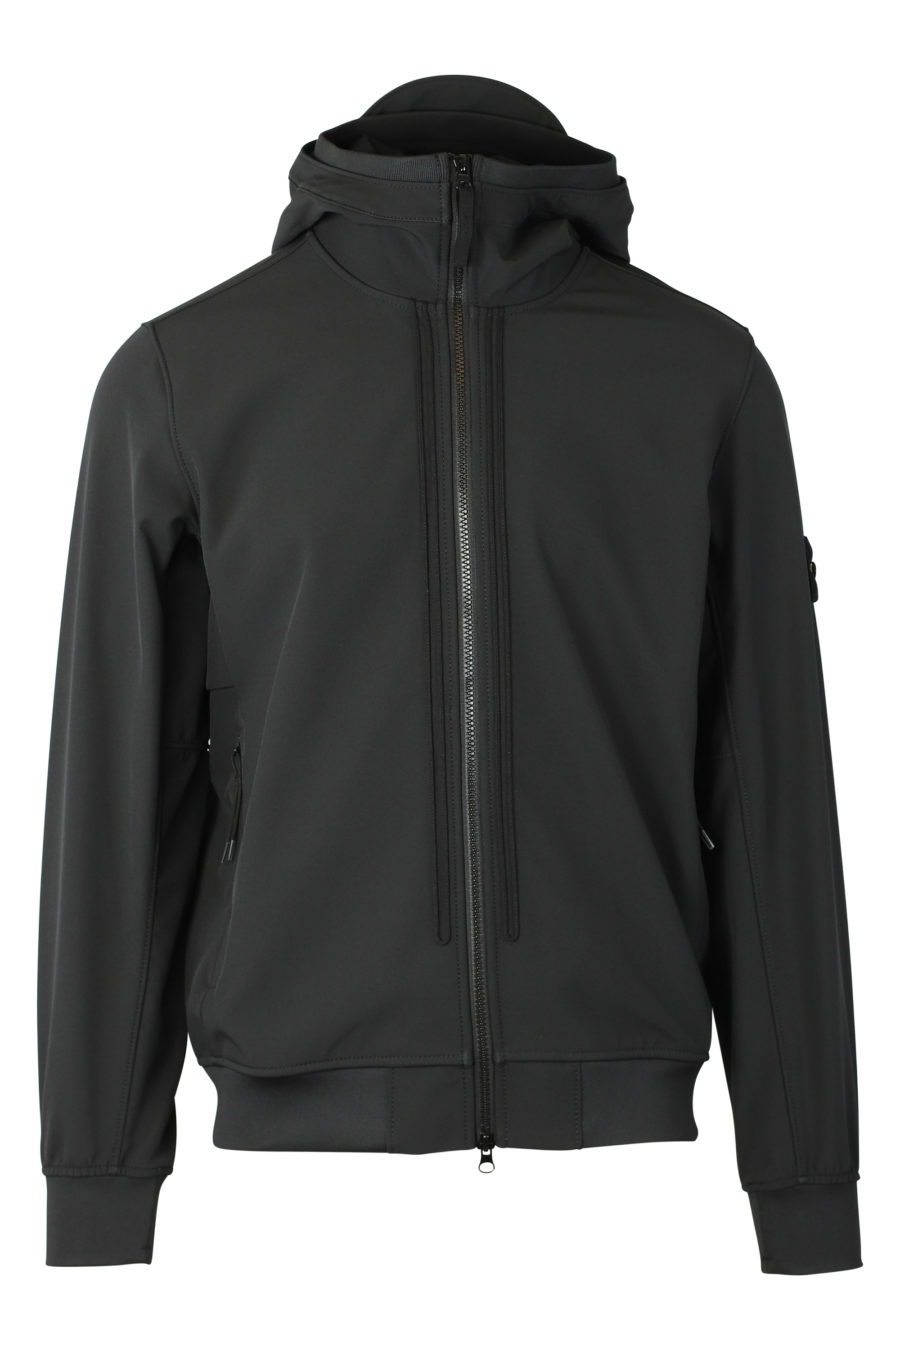 Chaqueta negra con capucha y logotipo parche - IMG 9305